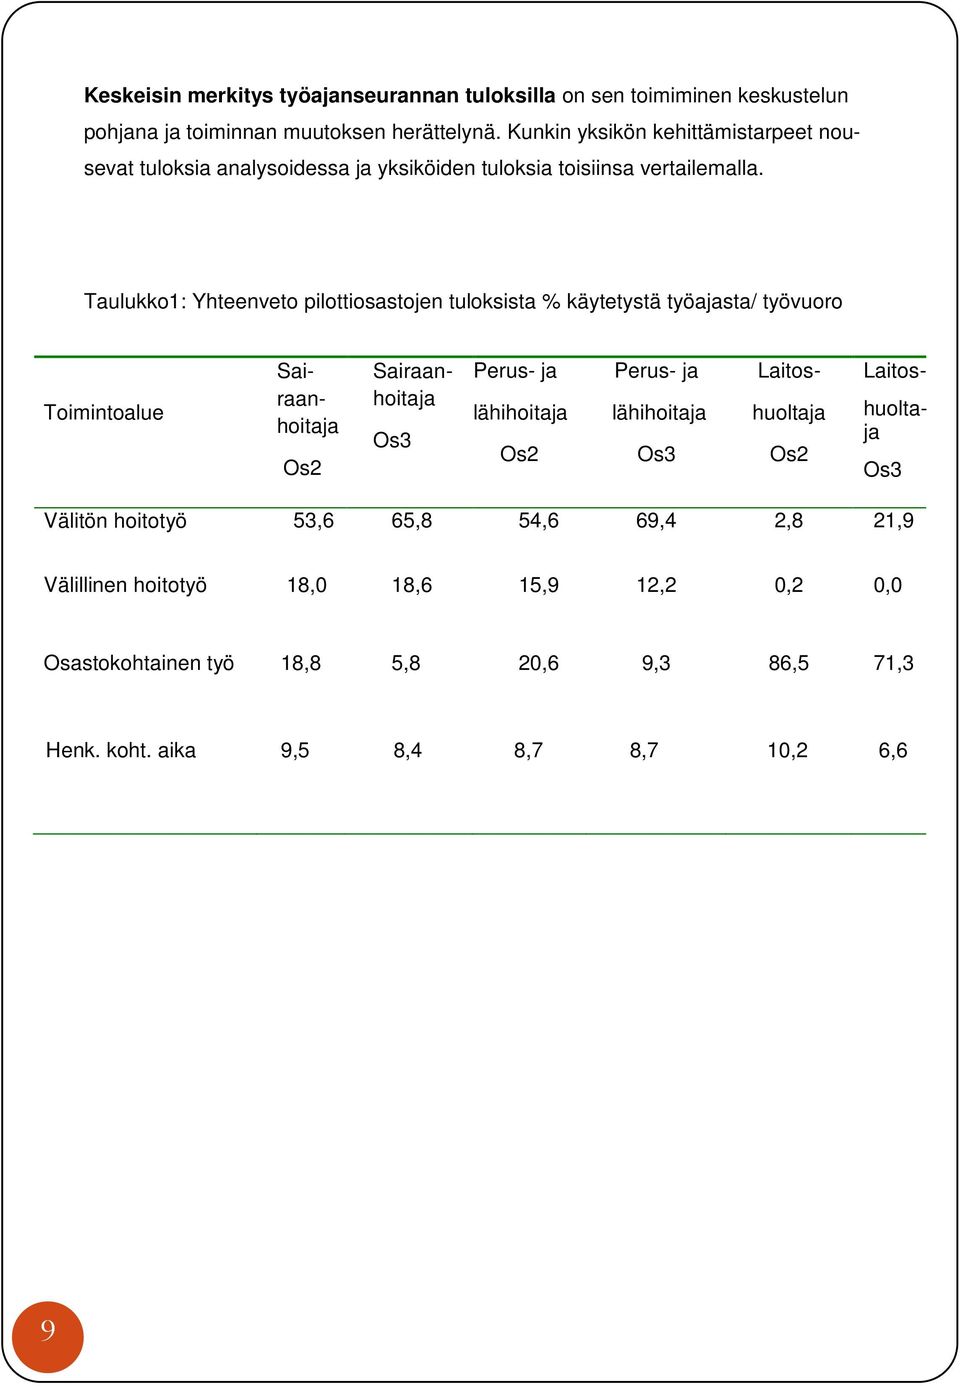 Taulukko1: Yhteenveto pilottiosastojen tuloksista % käytetystä työajasta/ työvuoro Toimintoalue Os2 Os3 Perus- ja lähihoitaja Os2 Perus- ja lähihoitaja Os3